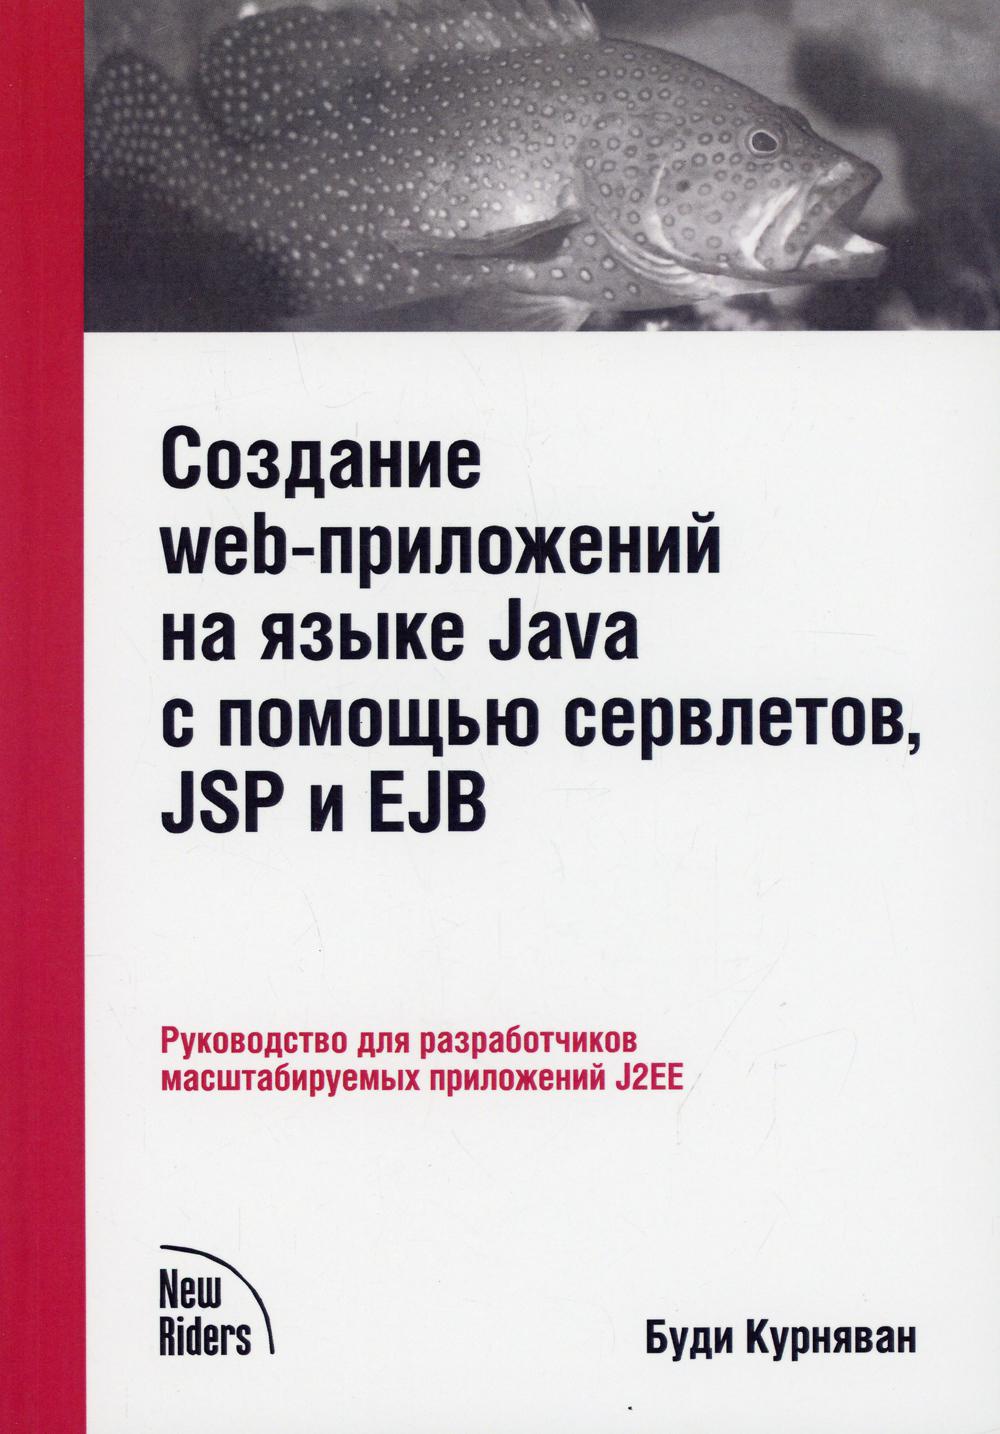 фото Книга создание web-приложений на языке java с помощью сервлетов, jsp и ejb lori